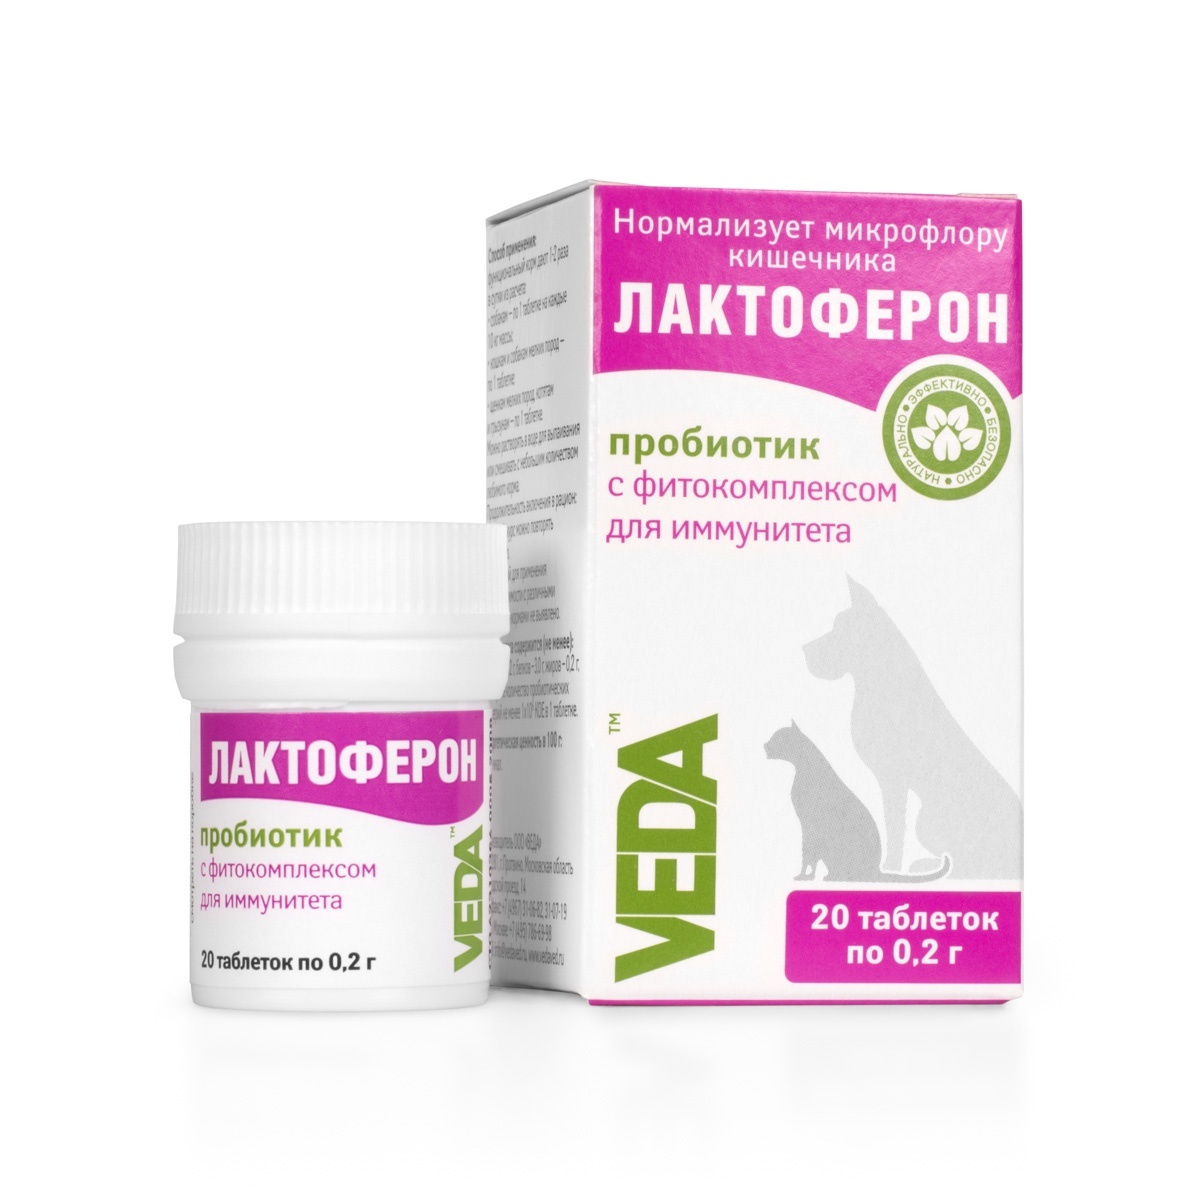 Веда лактоферон-пробиотик для улучшения обмена веществ, 20 таб. (10 г)